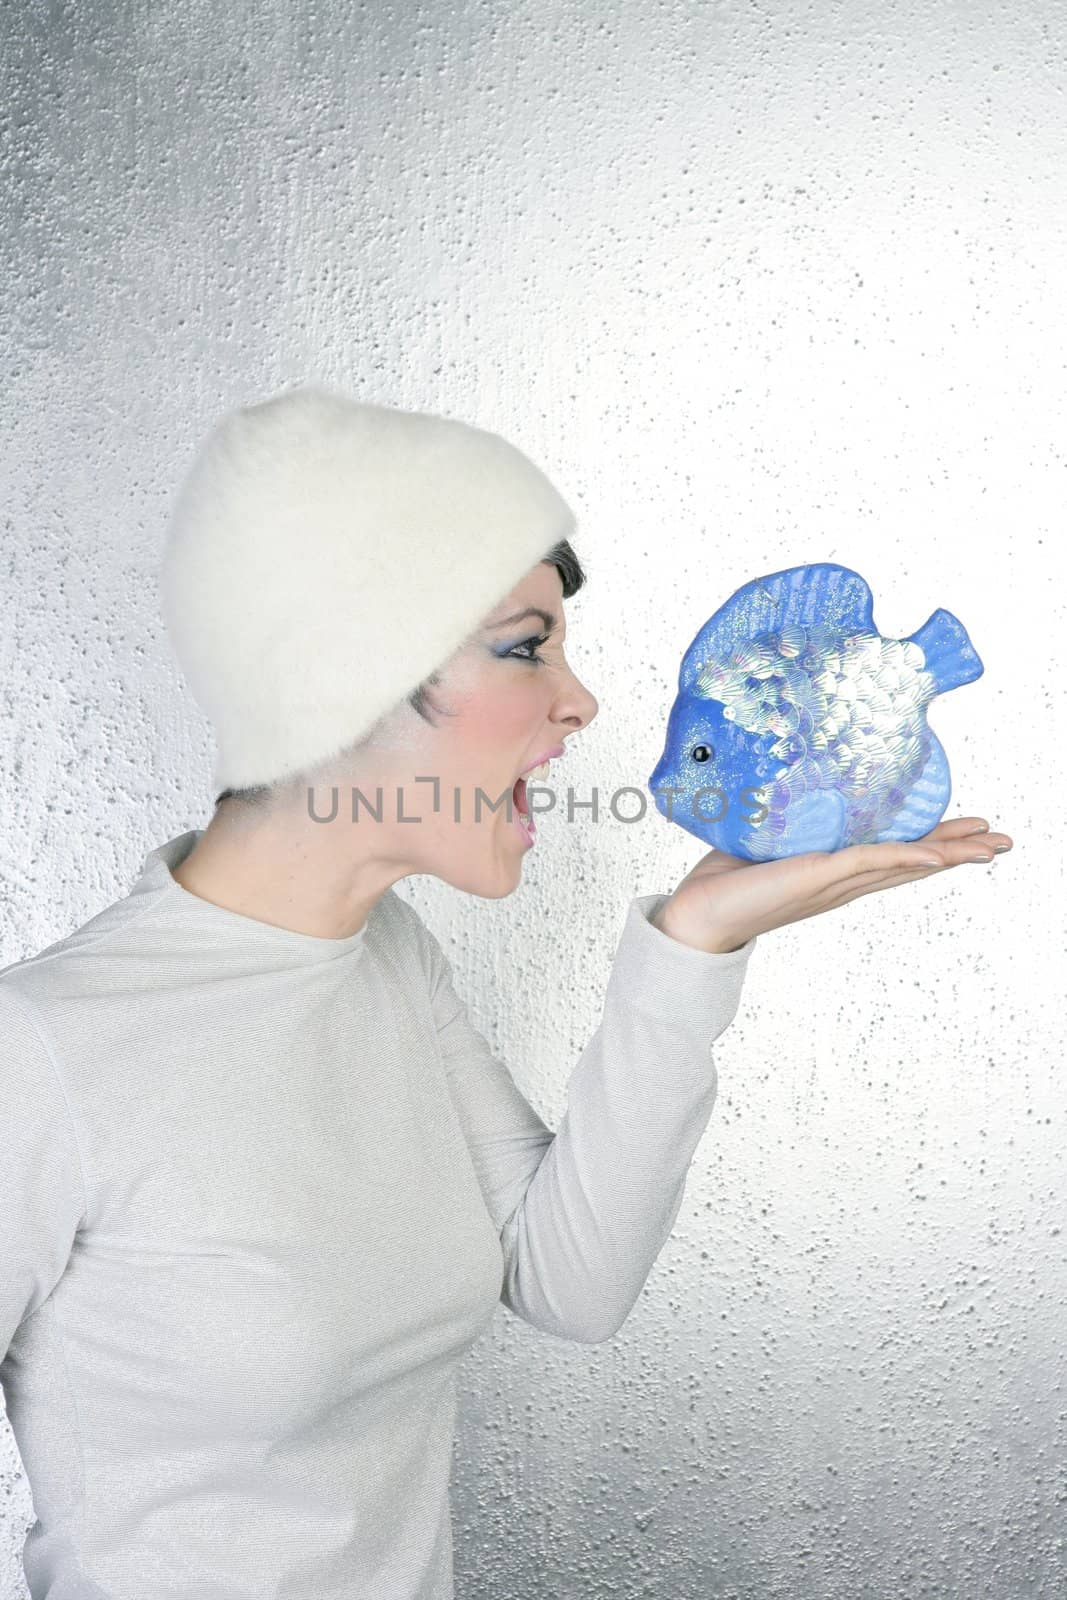 angry futuristic fashion woman shout to blue fish by lunamarina